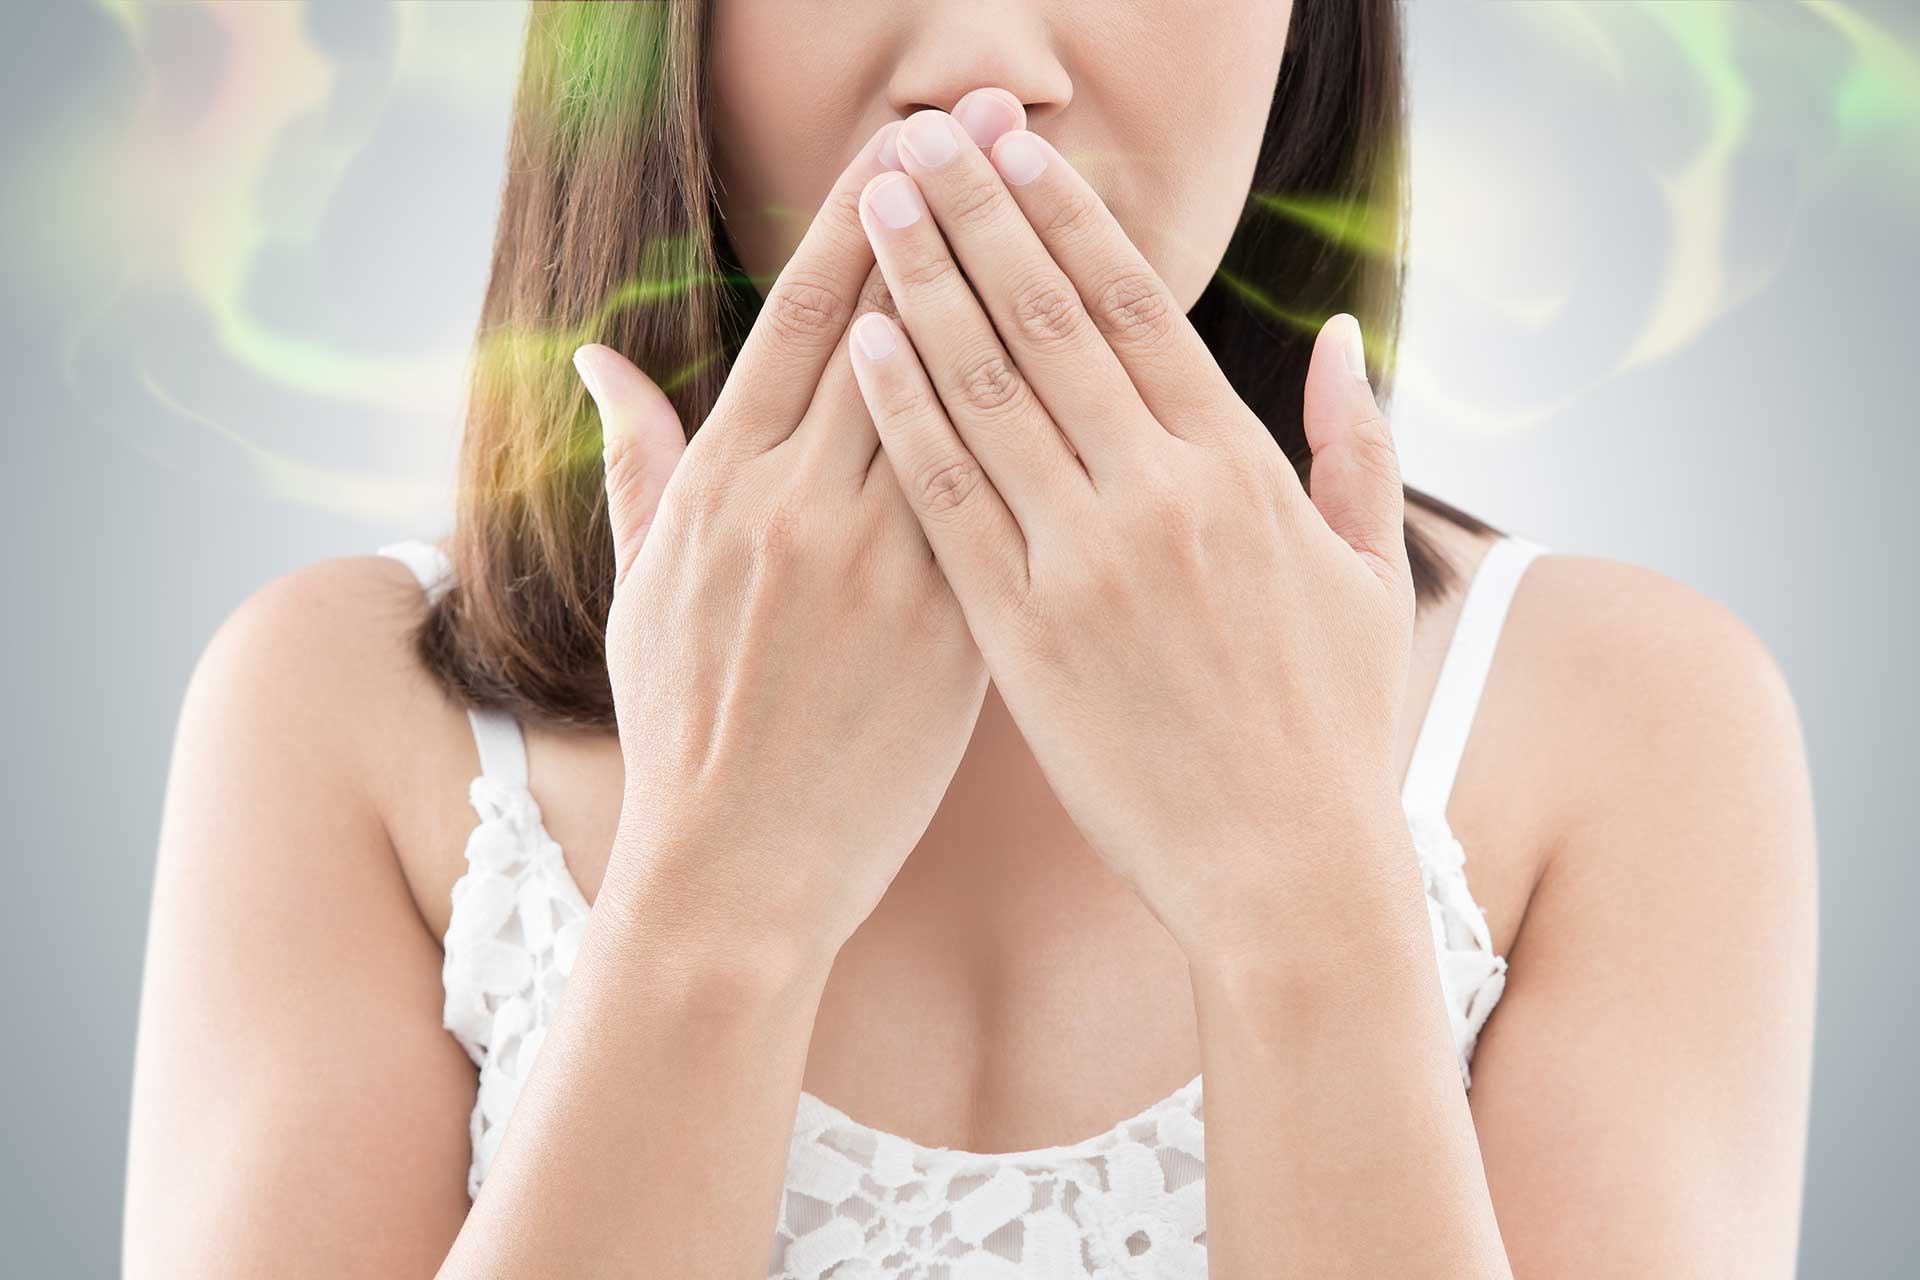 كيف اتخلص من رائحة الفم نصائح فعالة وطبيعية